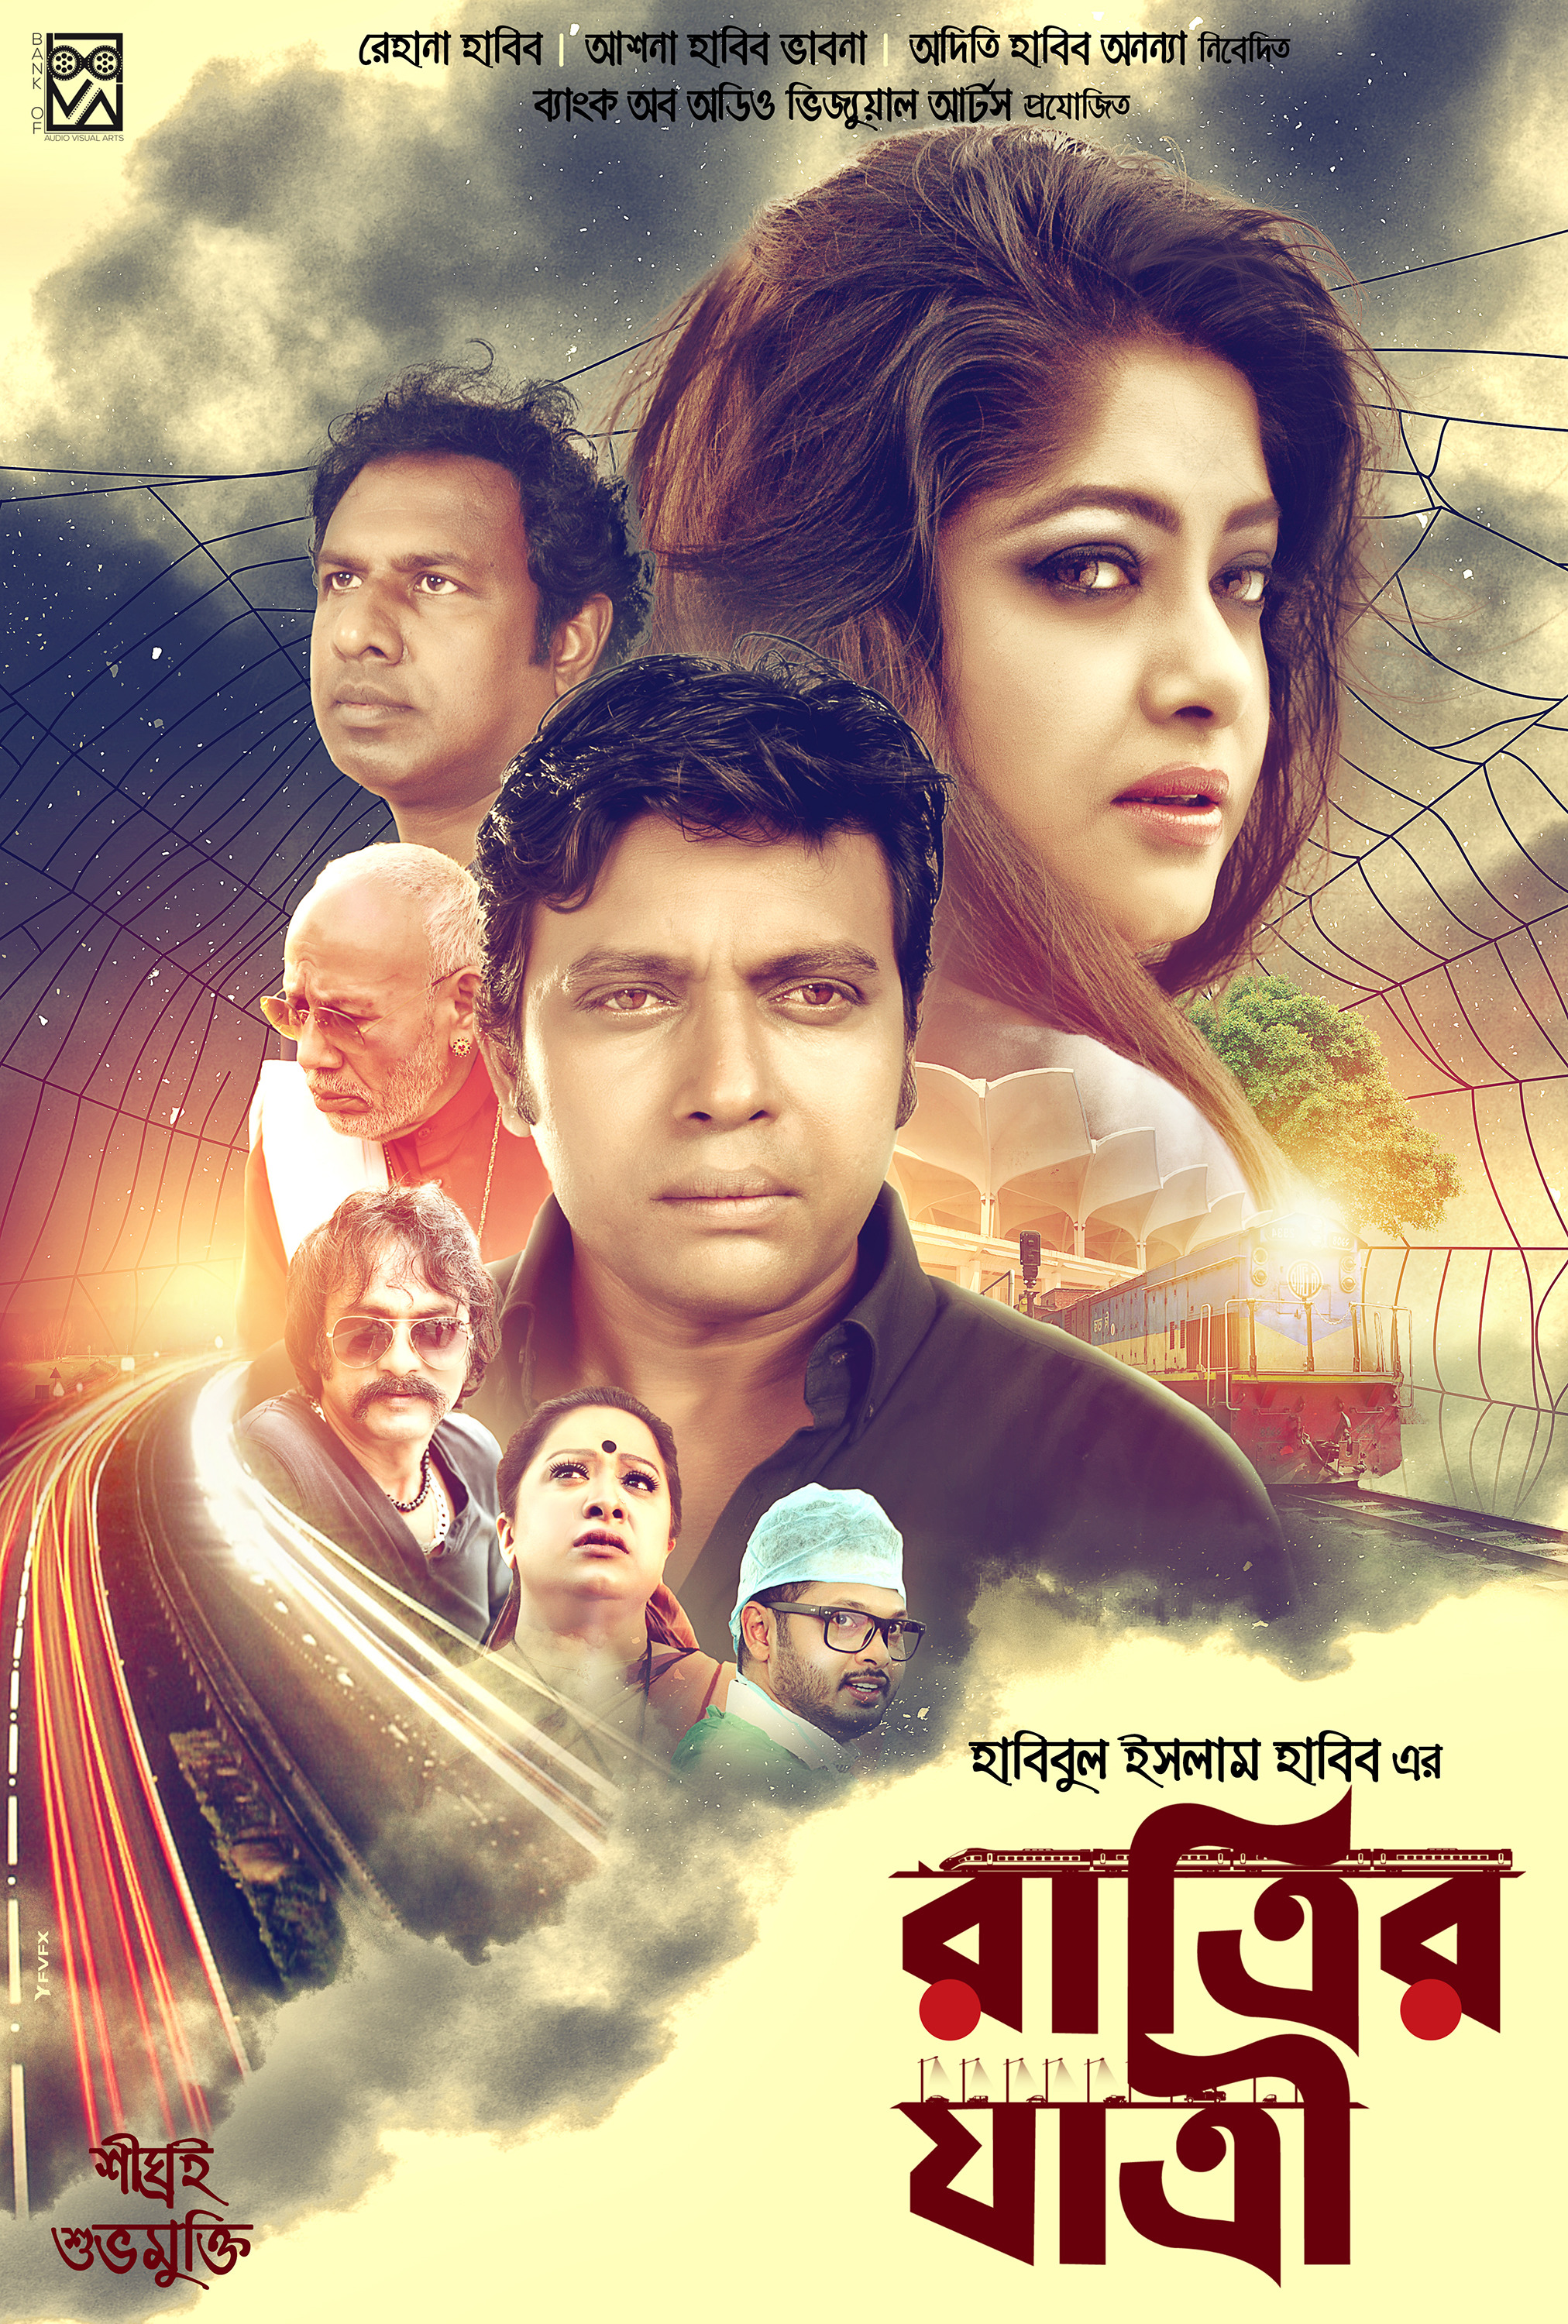 Mega Sized Movie Poster Image for Ratrir Jatri (#2 of 5)